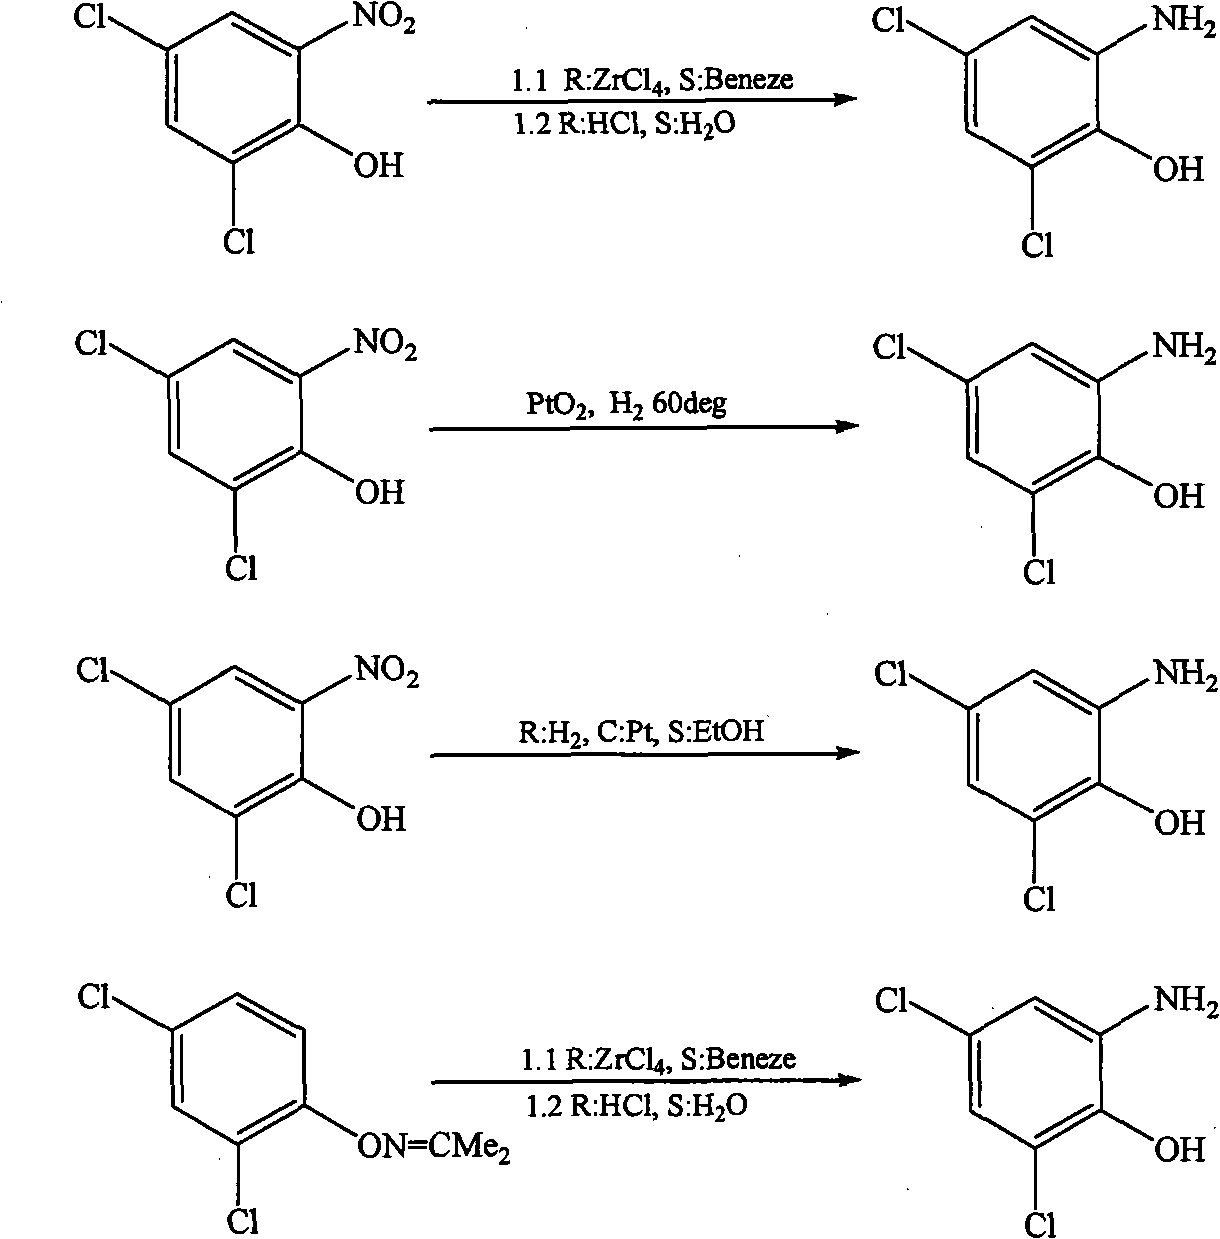 Method for preparing 2-amido-4,6-dichlorophenol